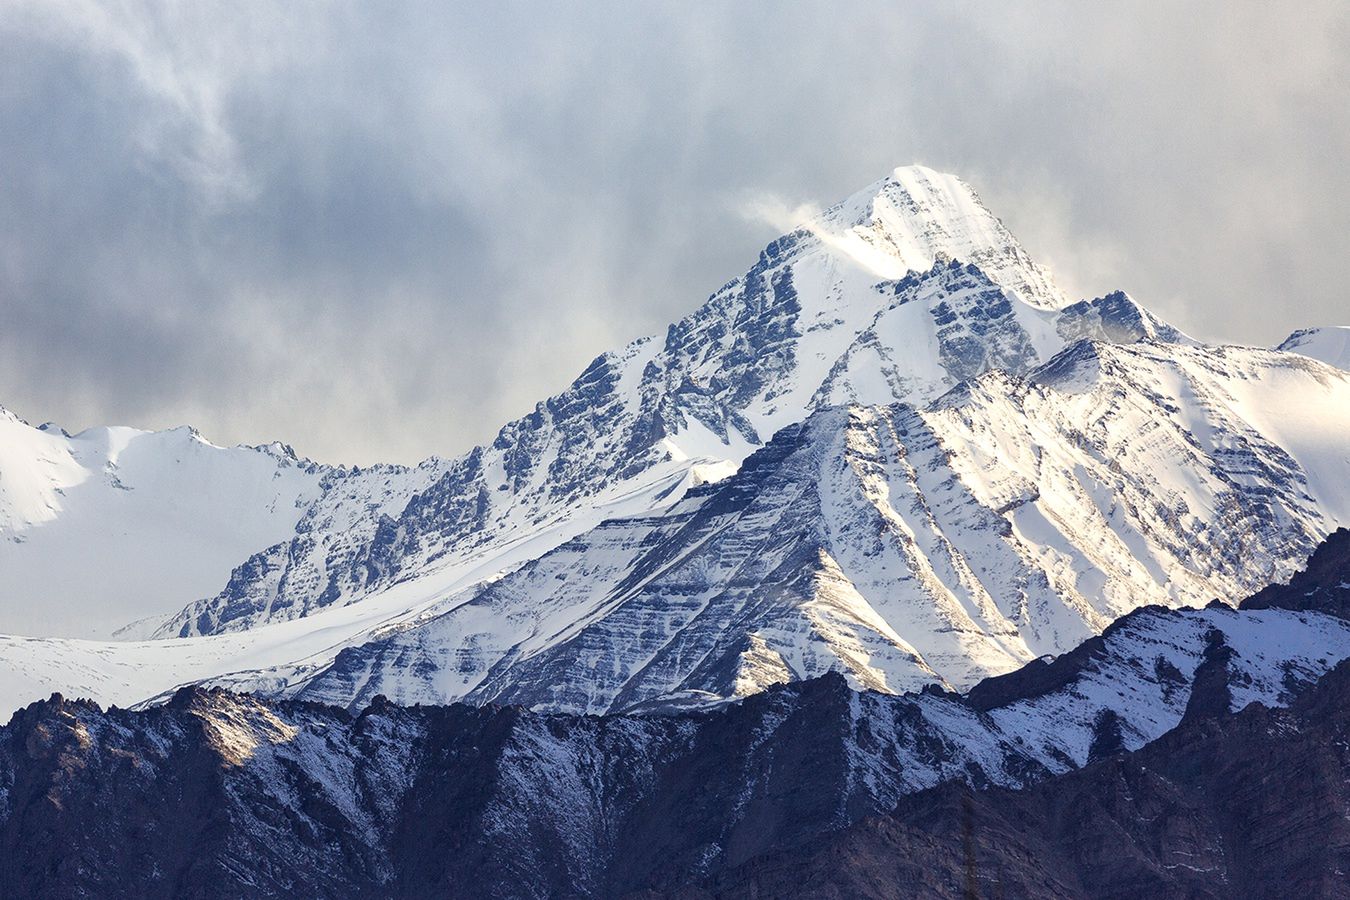 Dramat w Nepalu. Lawina pod Mount Everest i zaginieni himalaiści